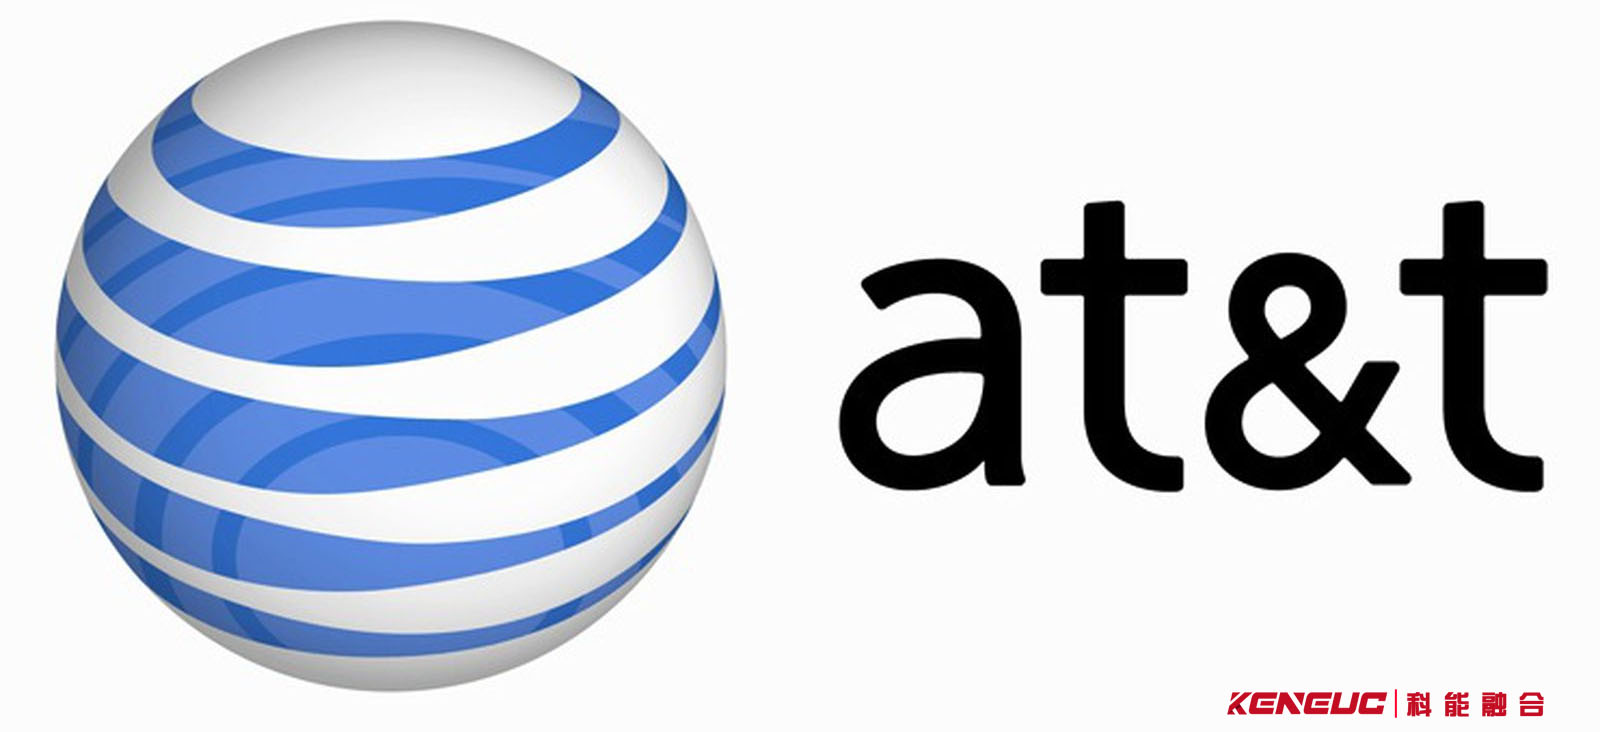 ATT：AT&T公司发展历程